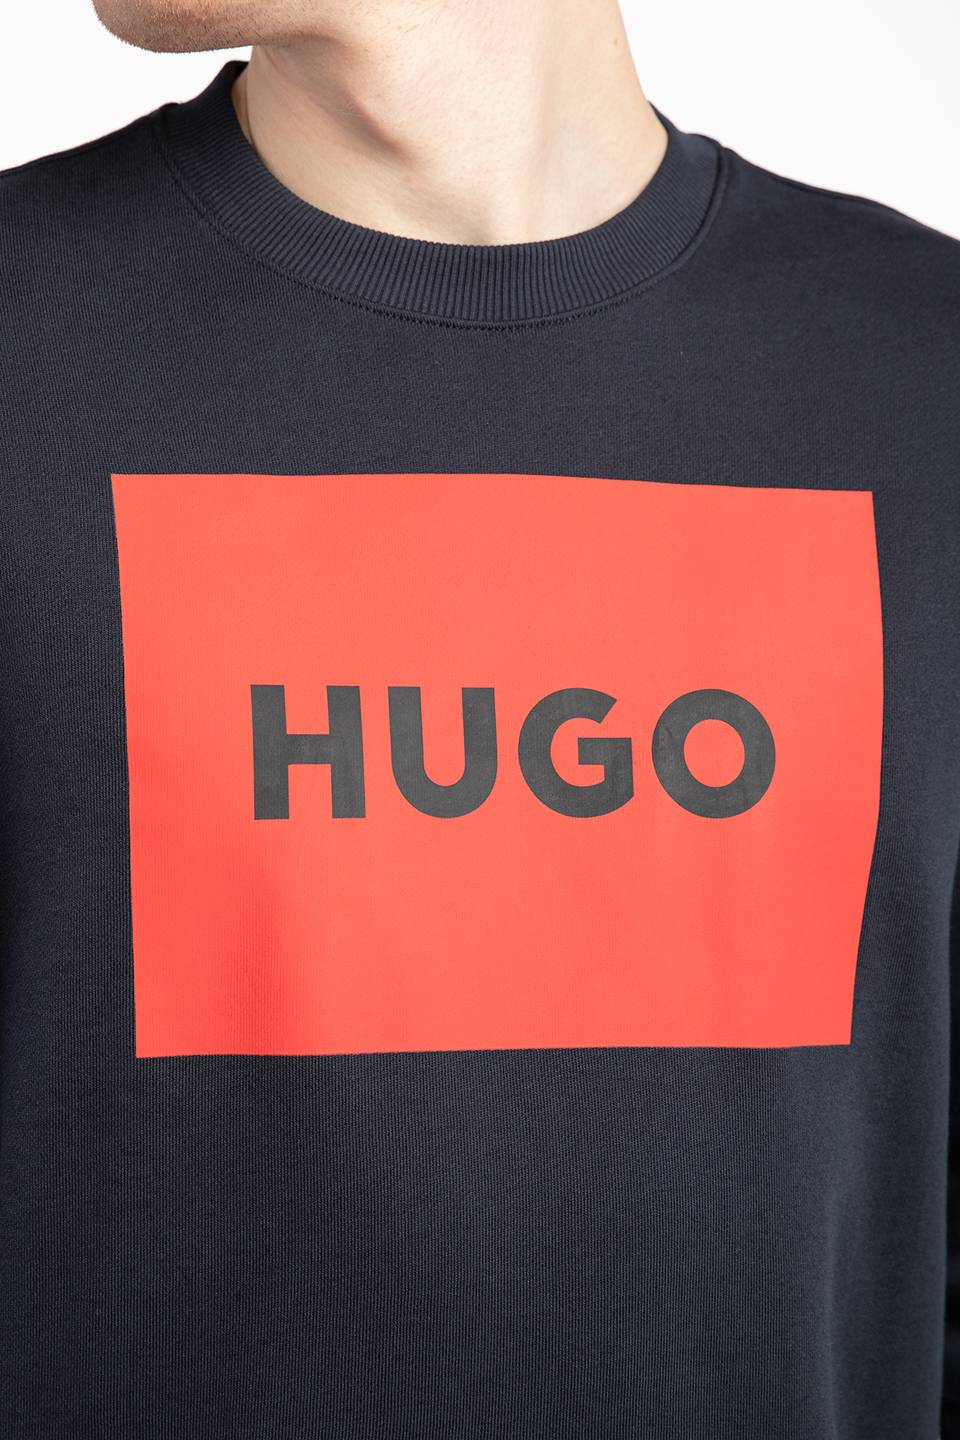 Bluza Hugo Boss duragol222 10231445 01 50467944-405